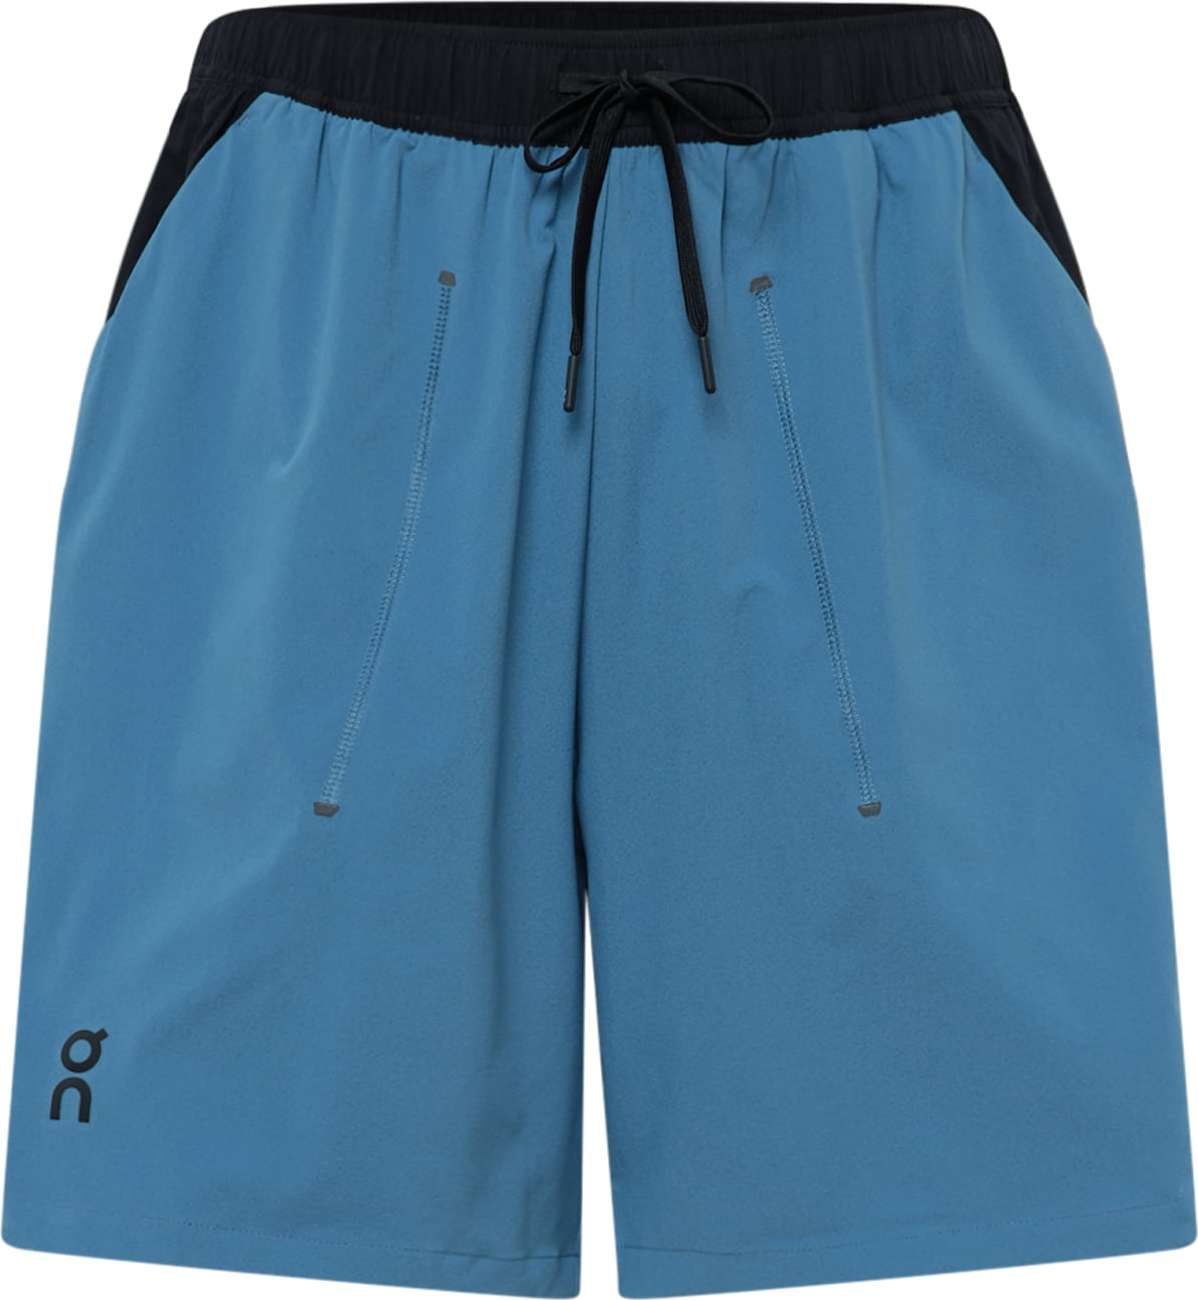 Sportovní kalhoty 'Focus' On azurová modrá / černá